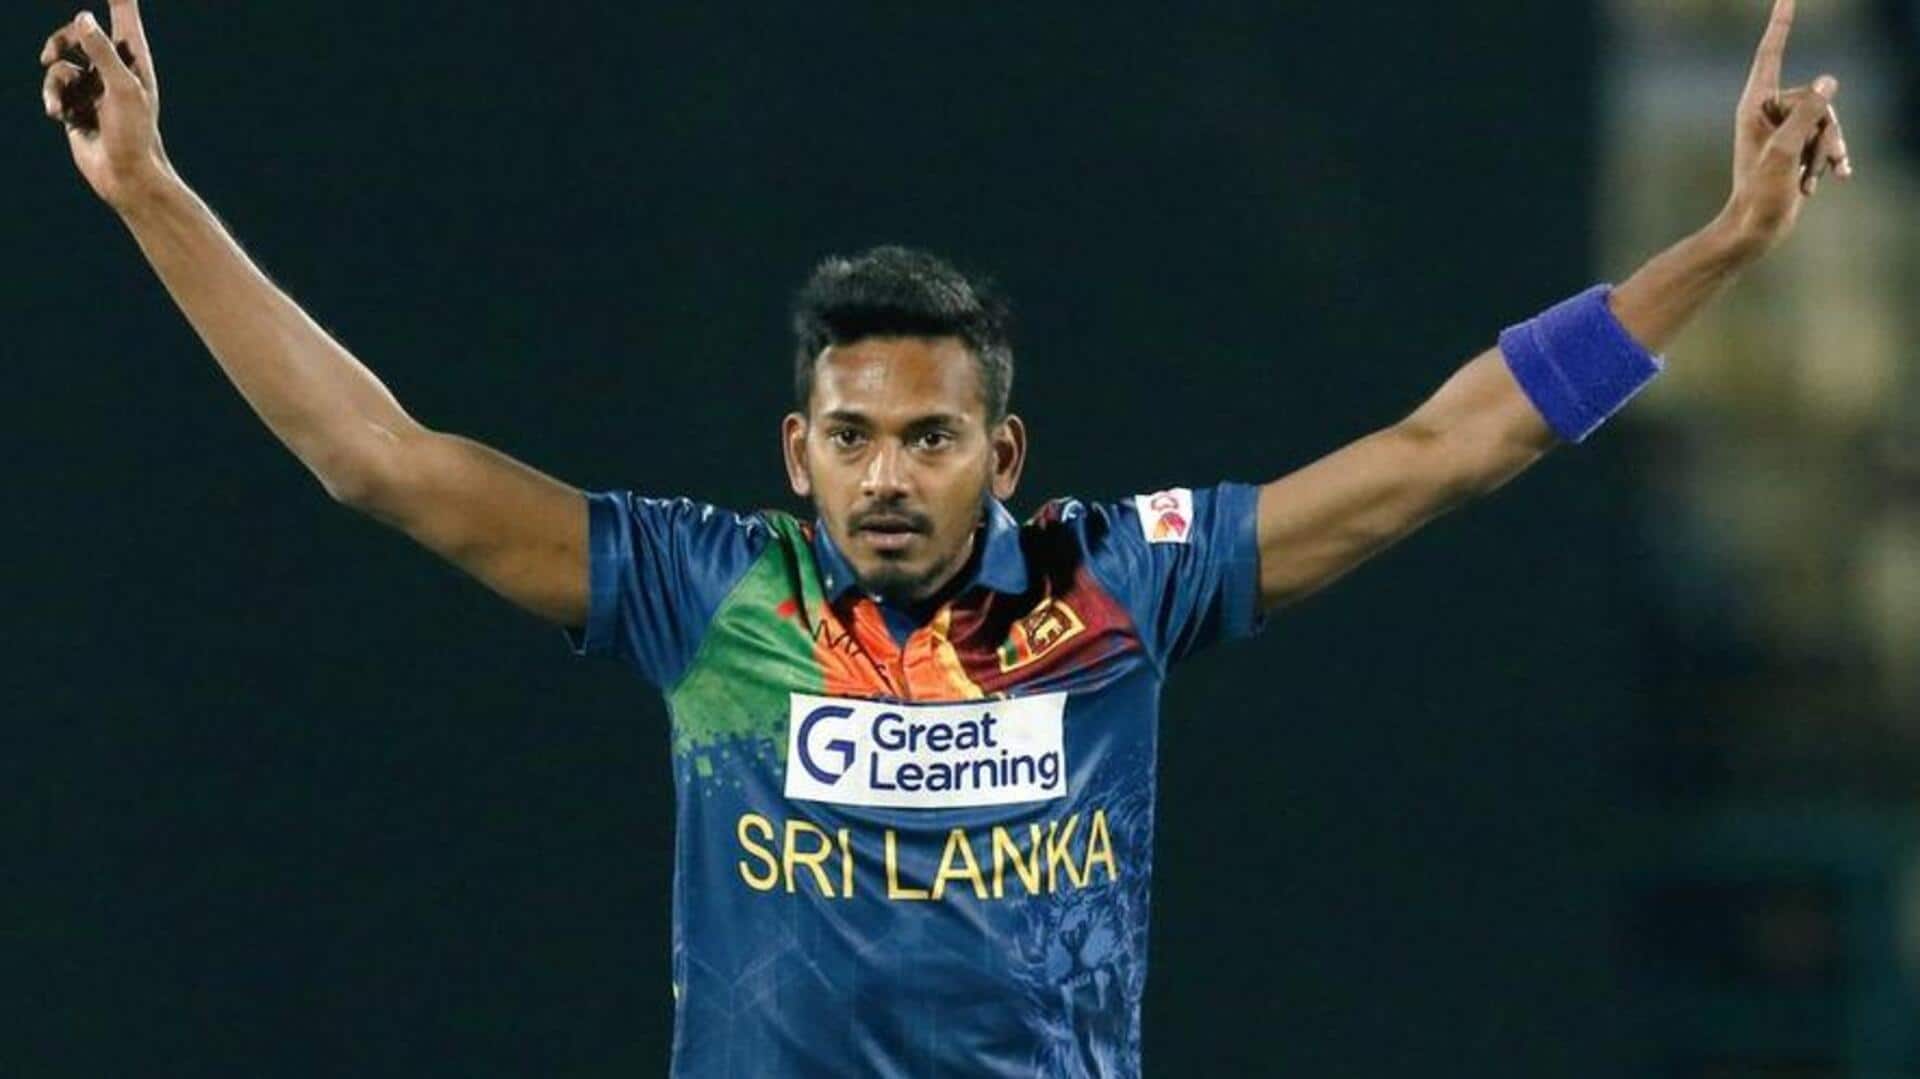 श्रीलंका बनाम अफगानिस्तान: दुशमंथा चमीरा ने चटकाए 4 विकेट, जानिए उनके आंकड़े